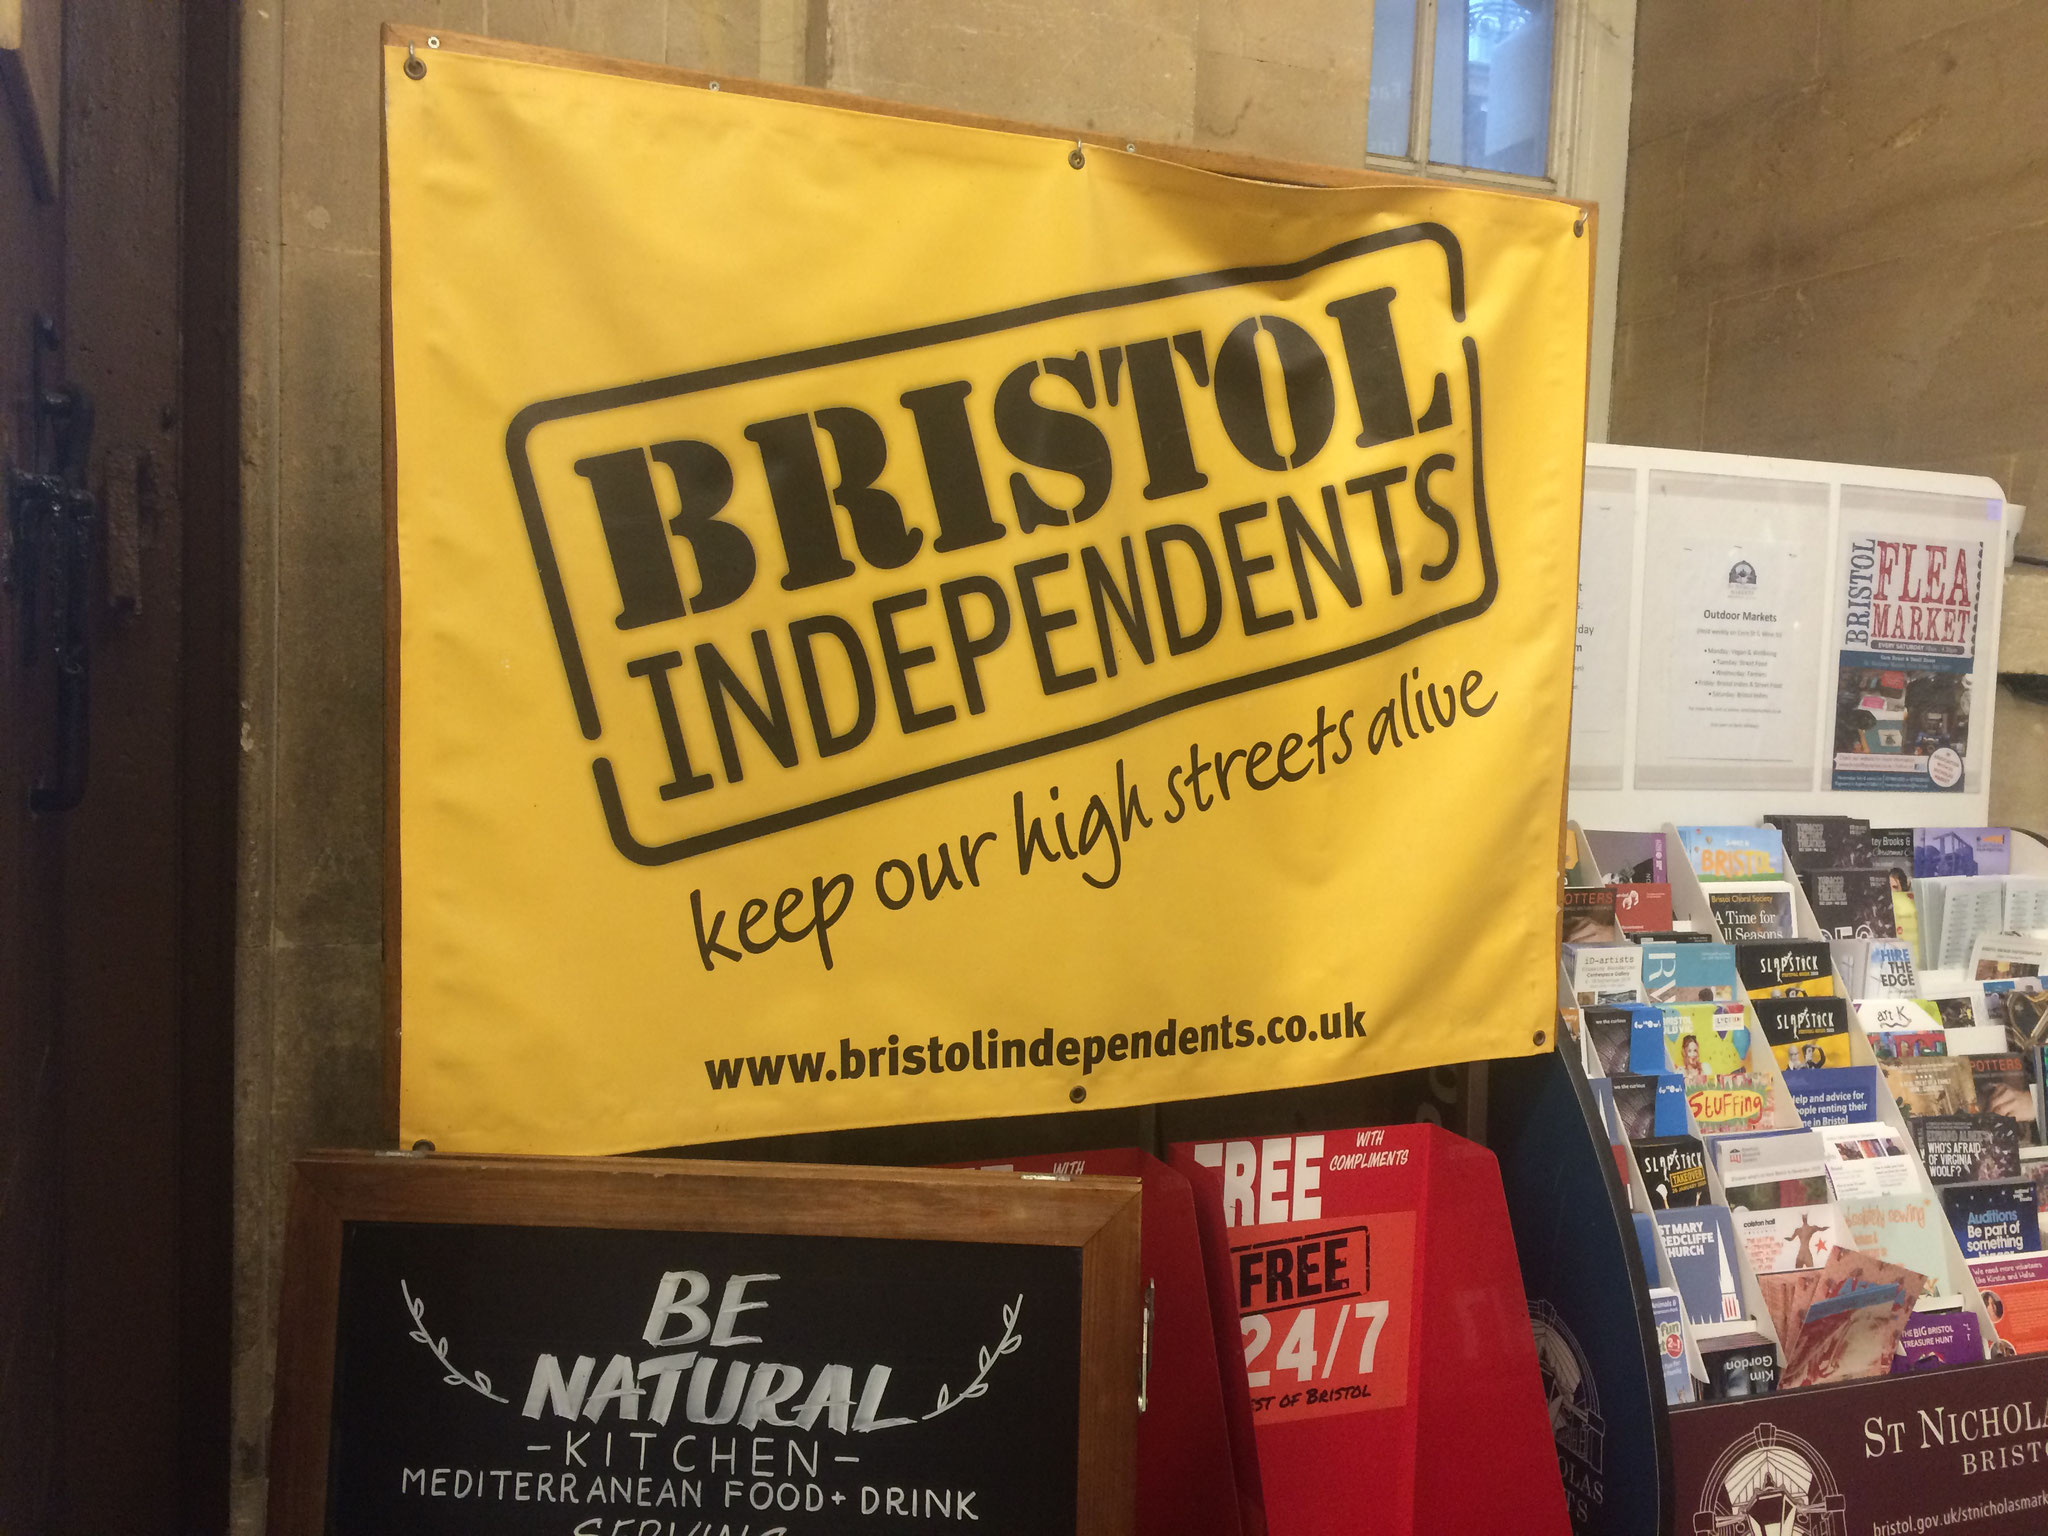 Bristol Independent: in der Stadt ist man stolz auf die auffällig hohe Zahl an Kooperativen und Indie-Shops